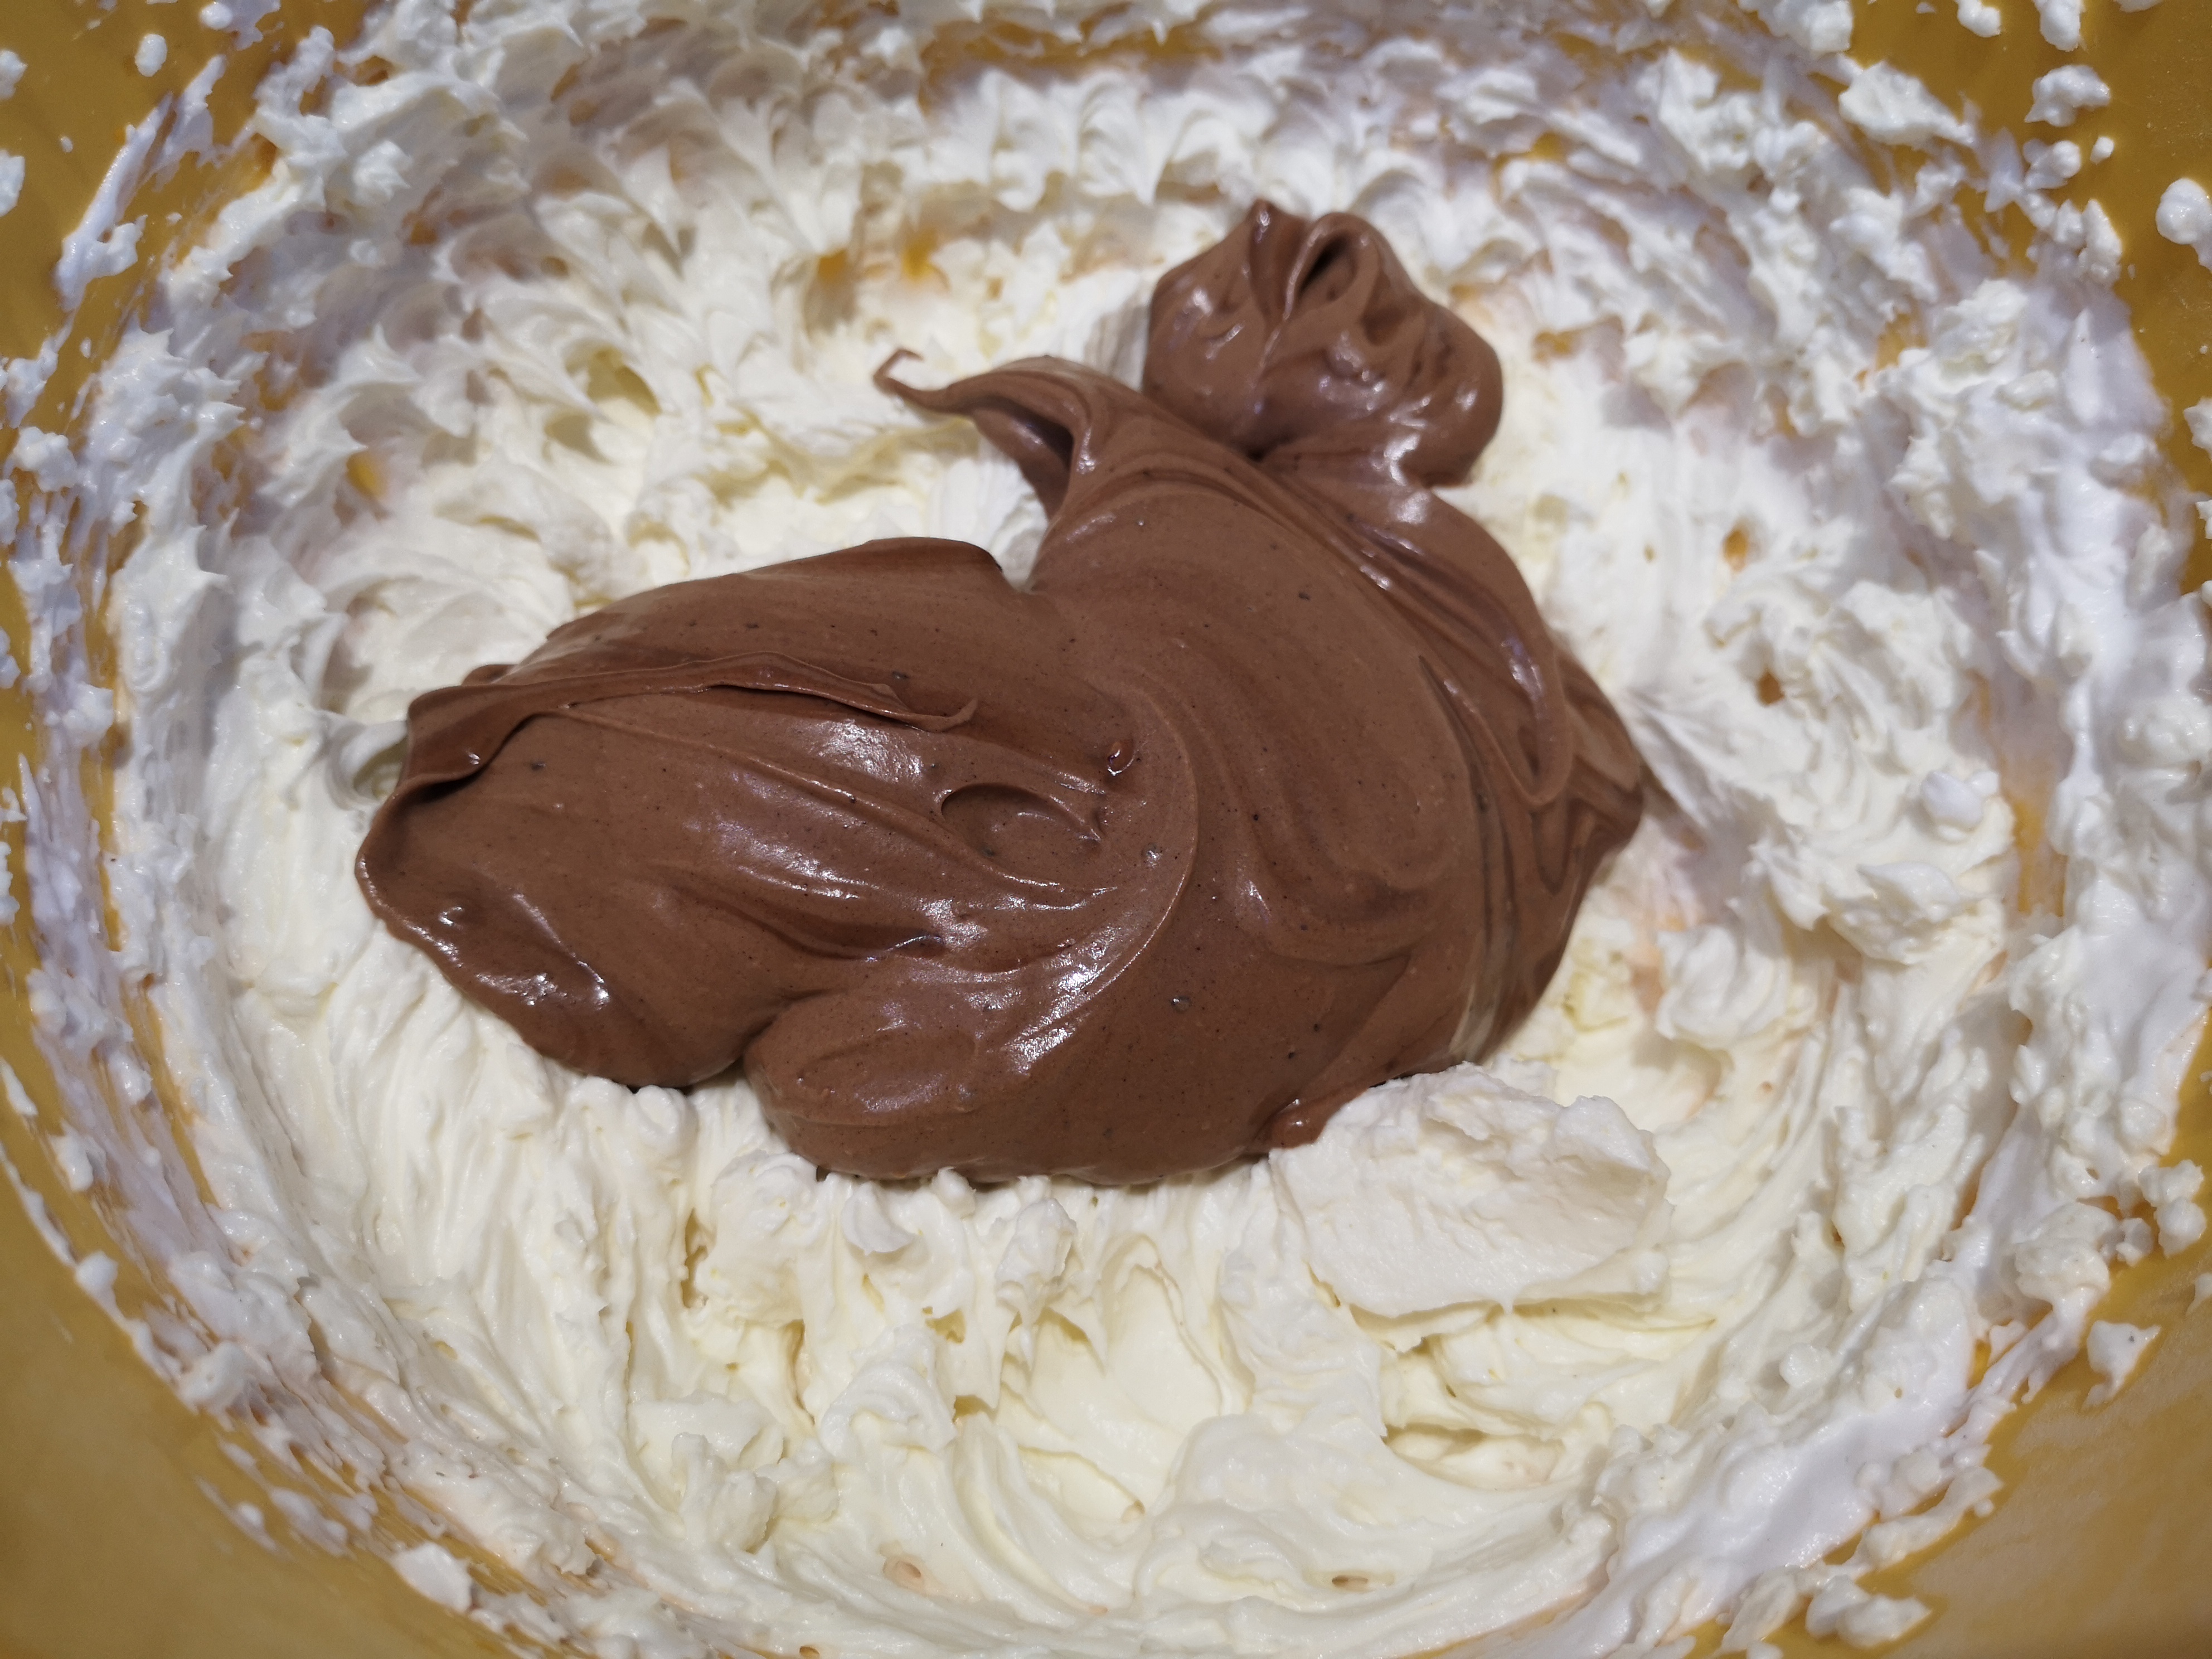 Desert cheesecake cu ciocolata si zmeura - reteta nr. 600